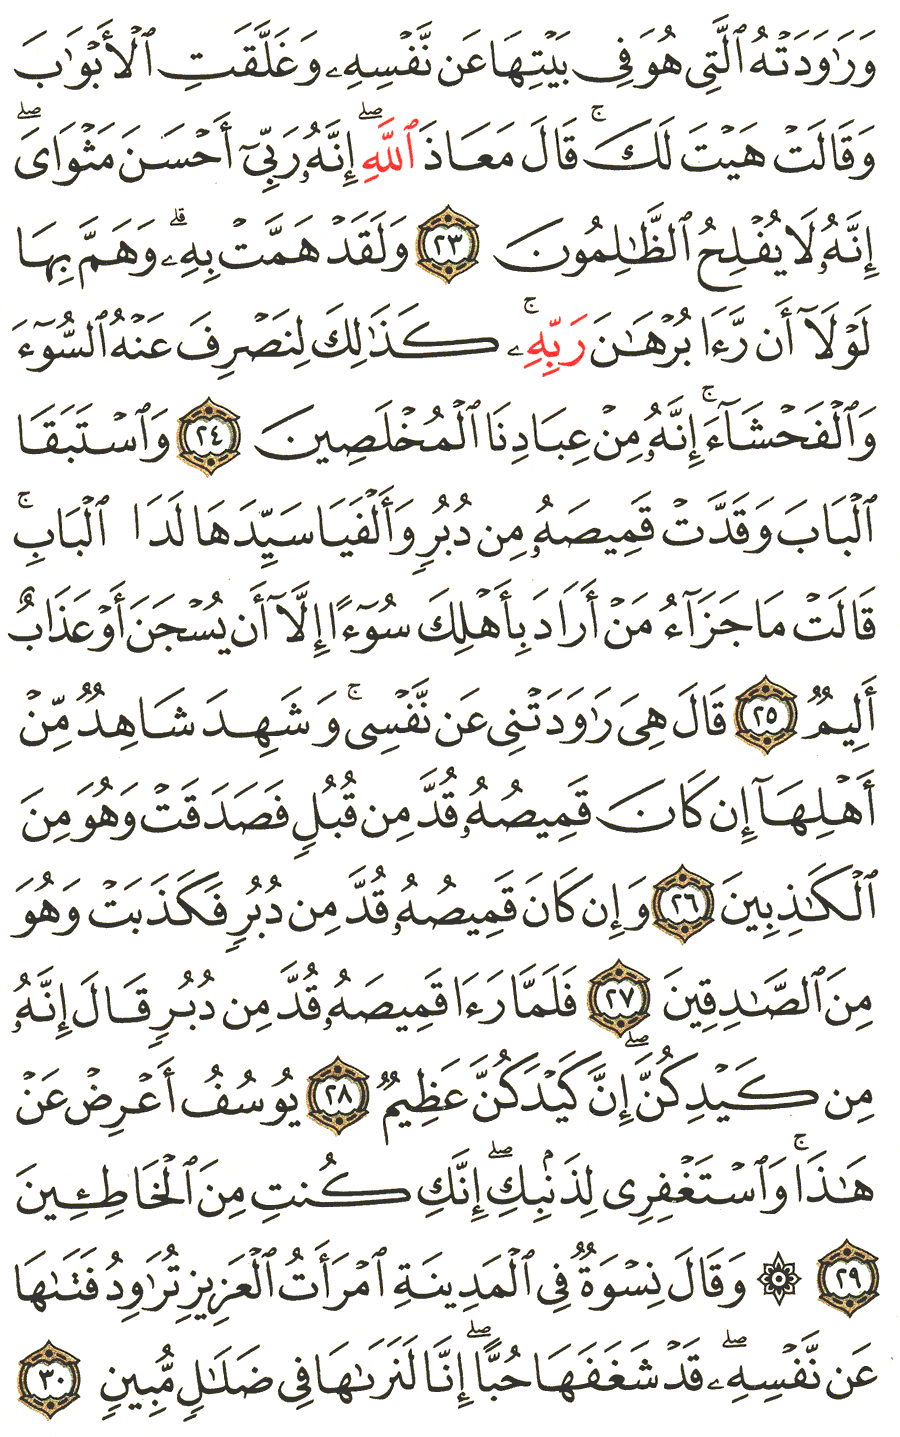 الصفحة 238 من القرآن الكريم